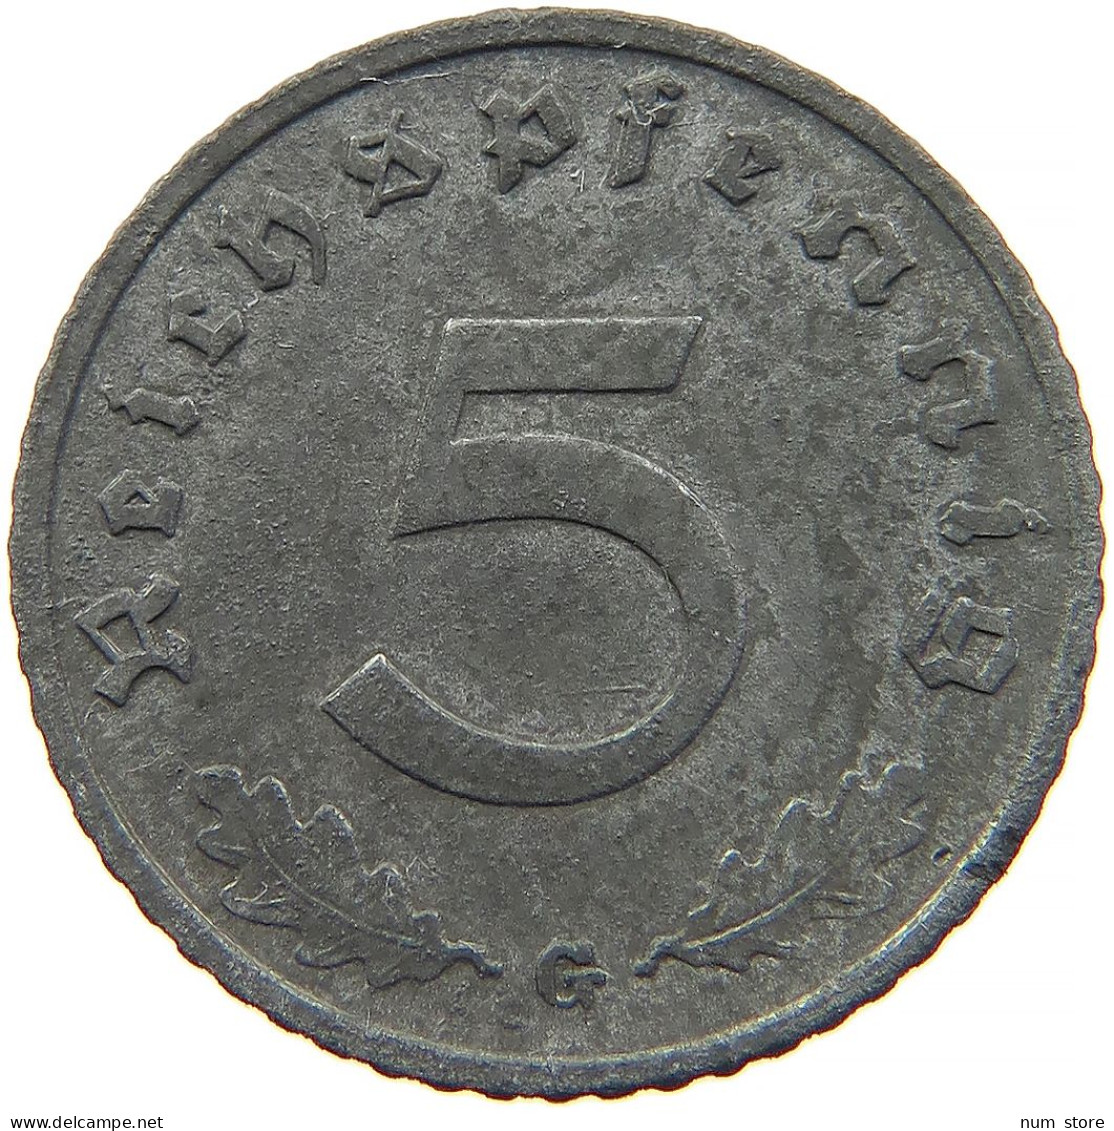 GERMANY 5 REICHSPFENNIG 1940 G #s091 0843 - 5 Reichspfennig